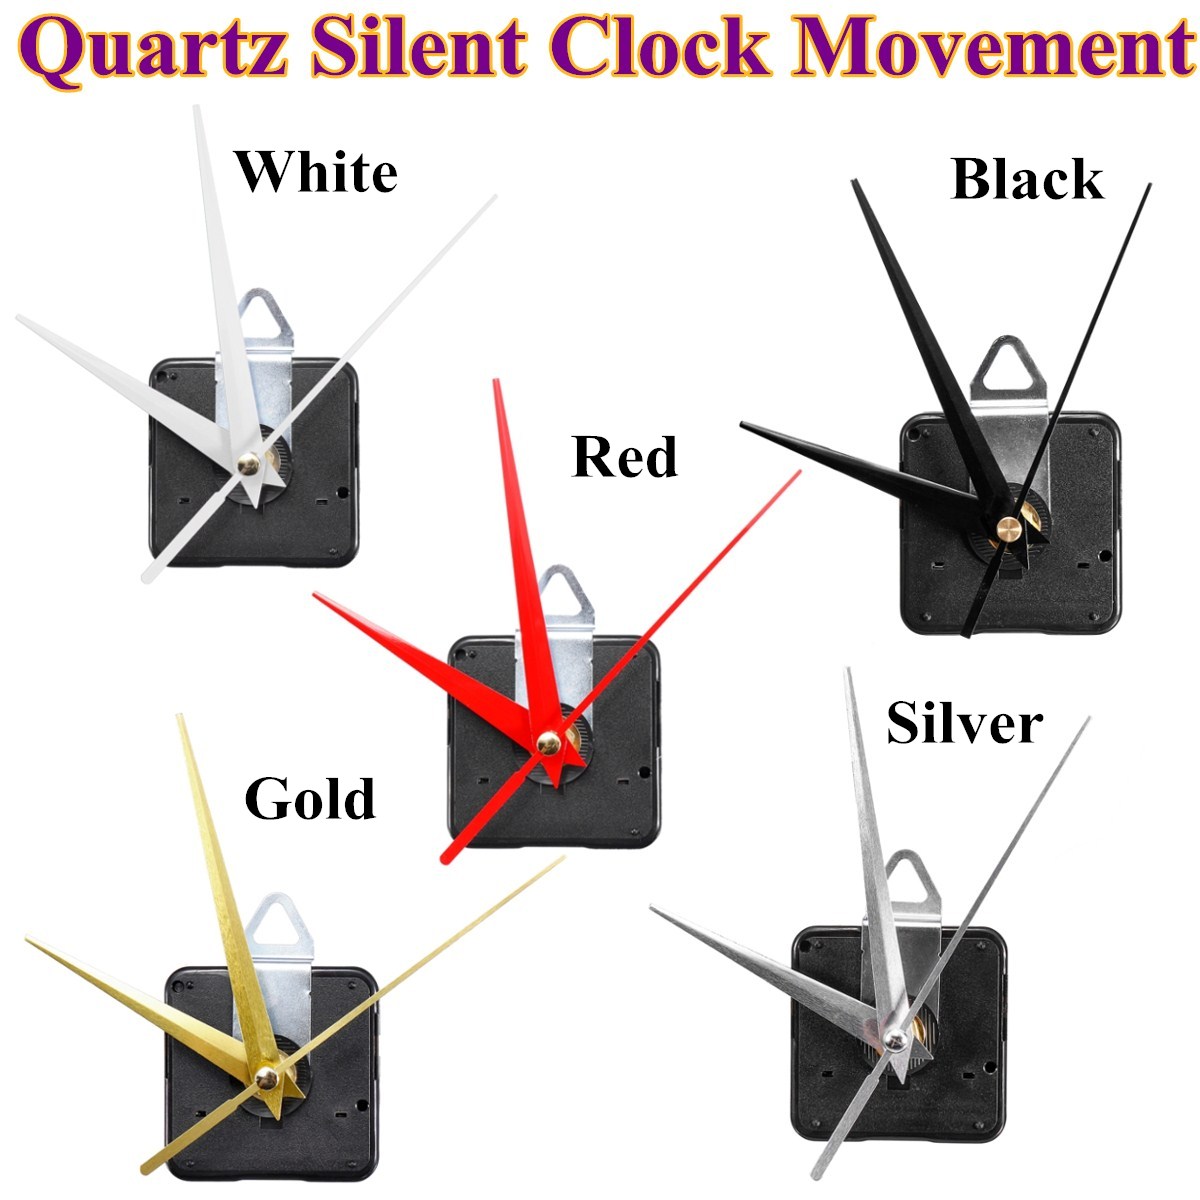 13mm-Quartz-Silent-Wall-Clock-Movement-Hour-Minute-Second-Hand-Clock-Movement-1353047-1